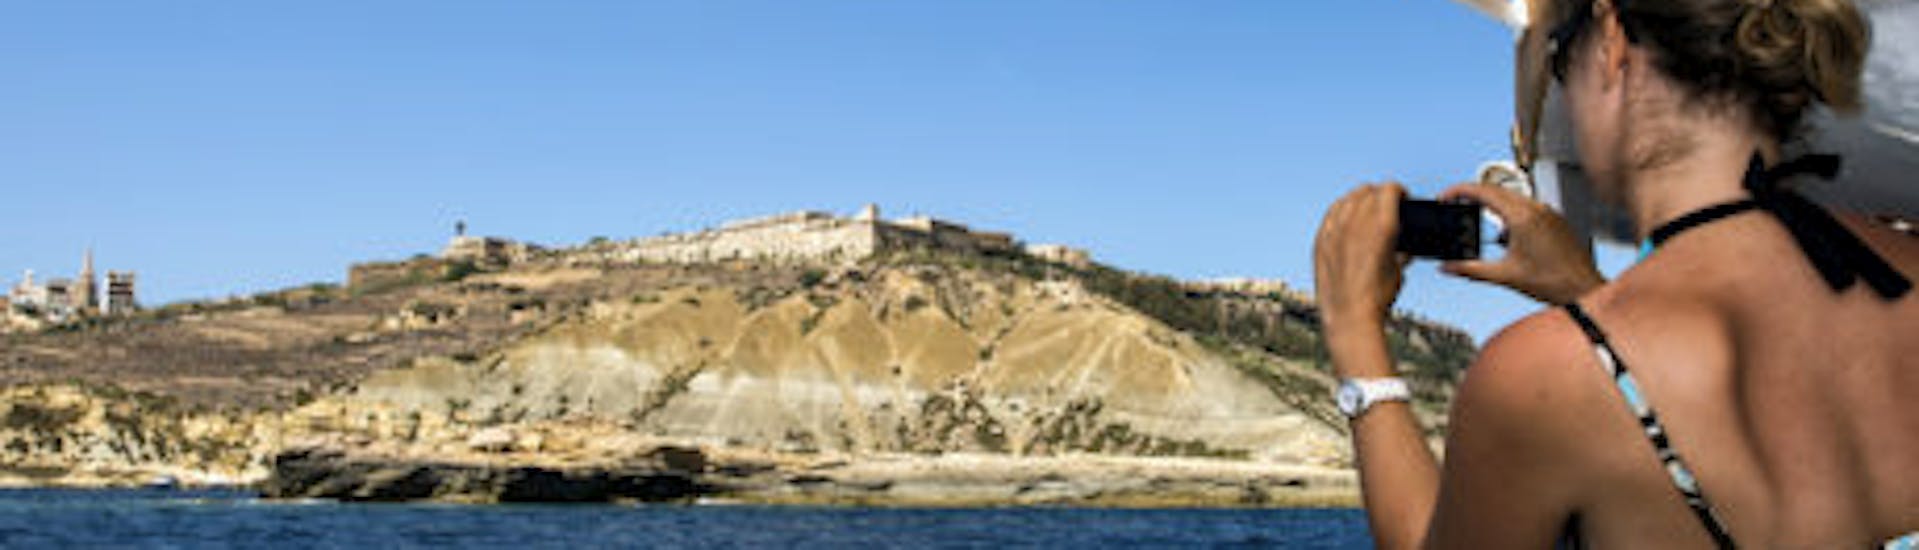 Bateau de Xlendi Pleasure Cruise durant l'excursion en bateau à partir de Mgarr autour de Gozo et du Blue Lagoon.